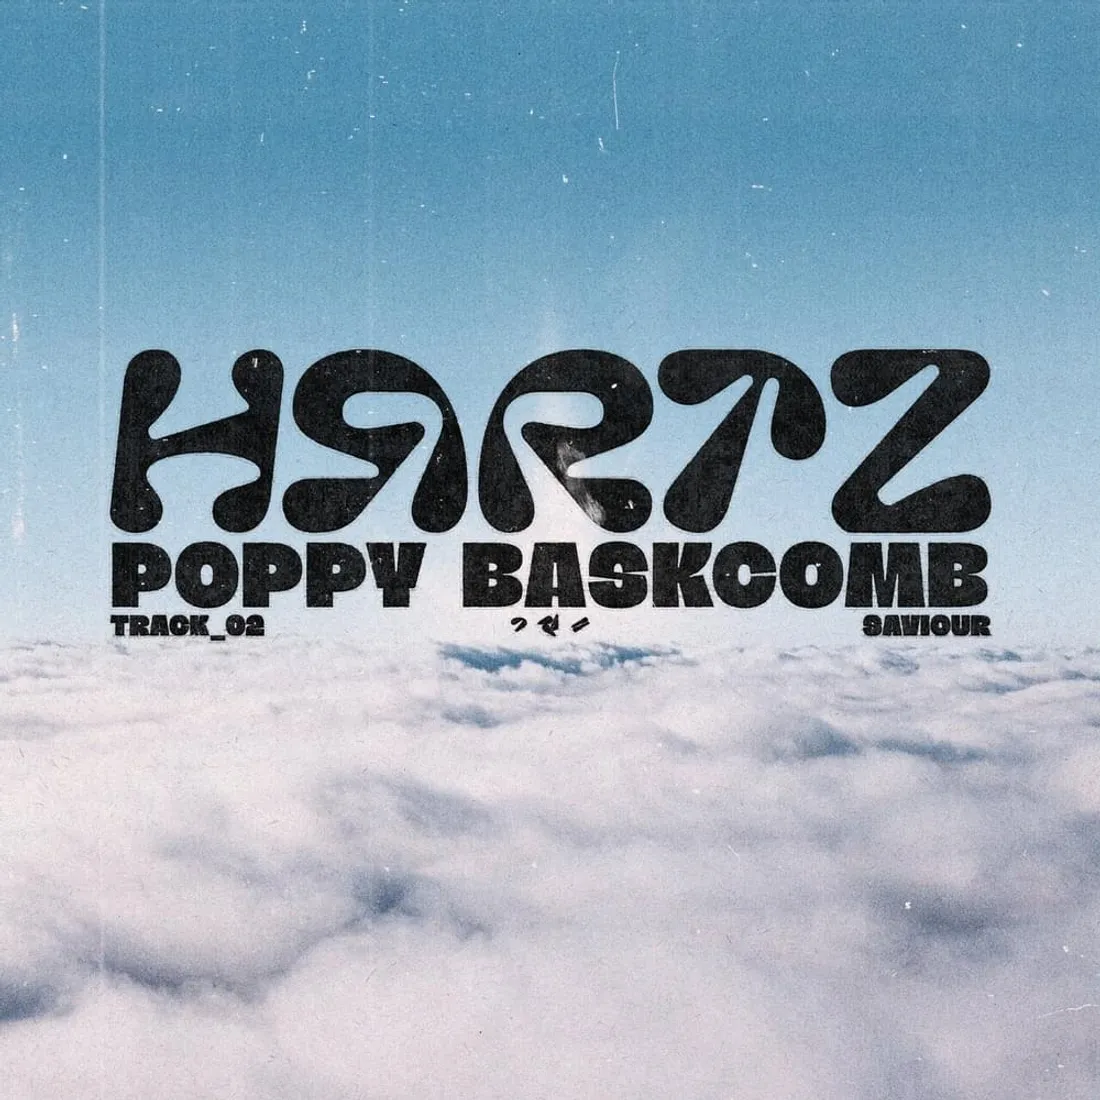 Hrrtz & Poppy Baskcomb - Saviour 